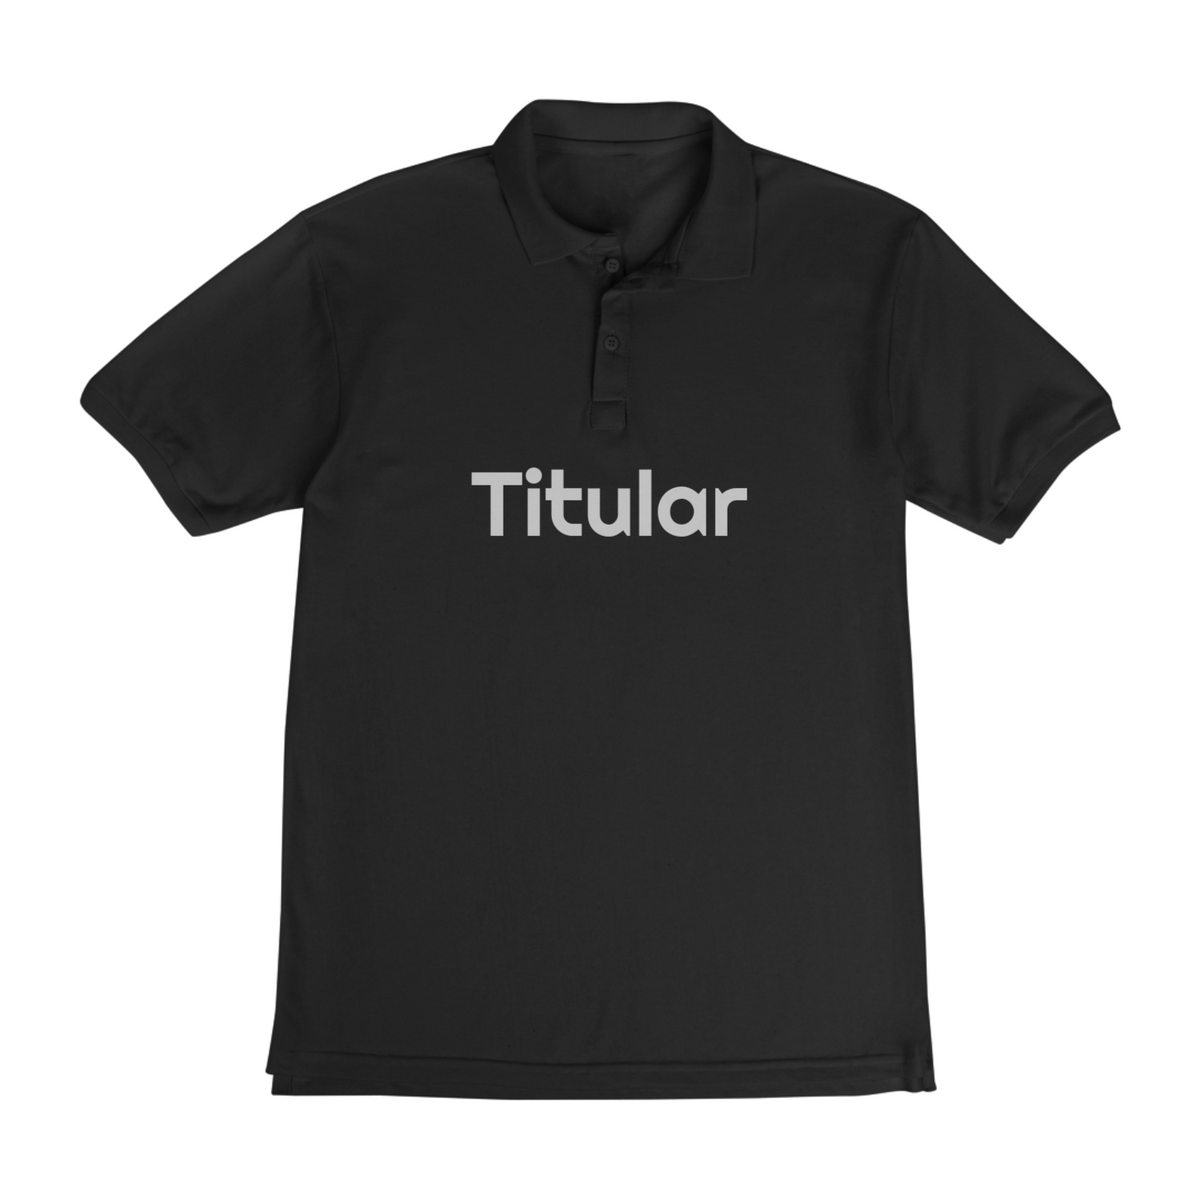 Nome do produto: Camisa preta titular